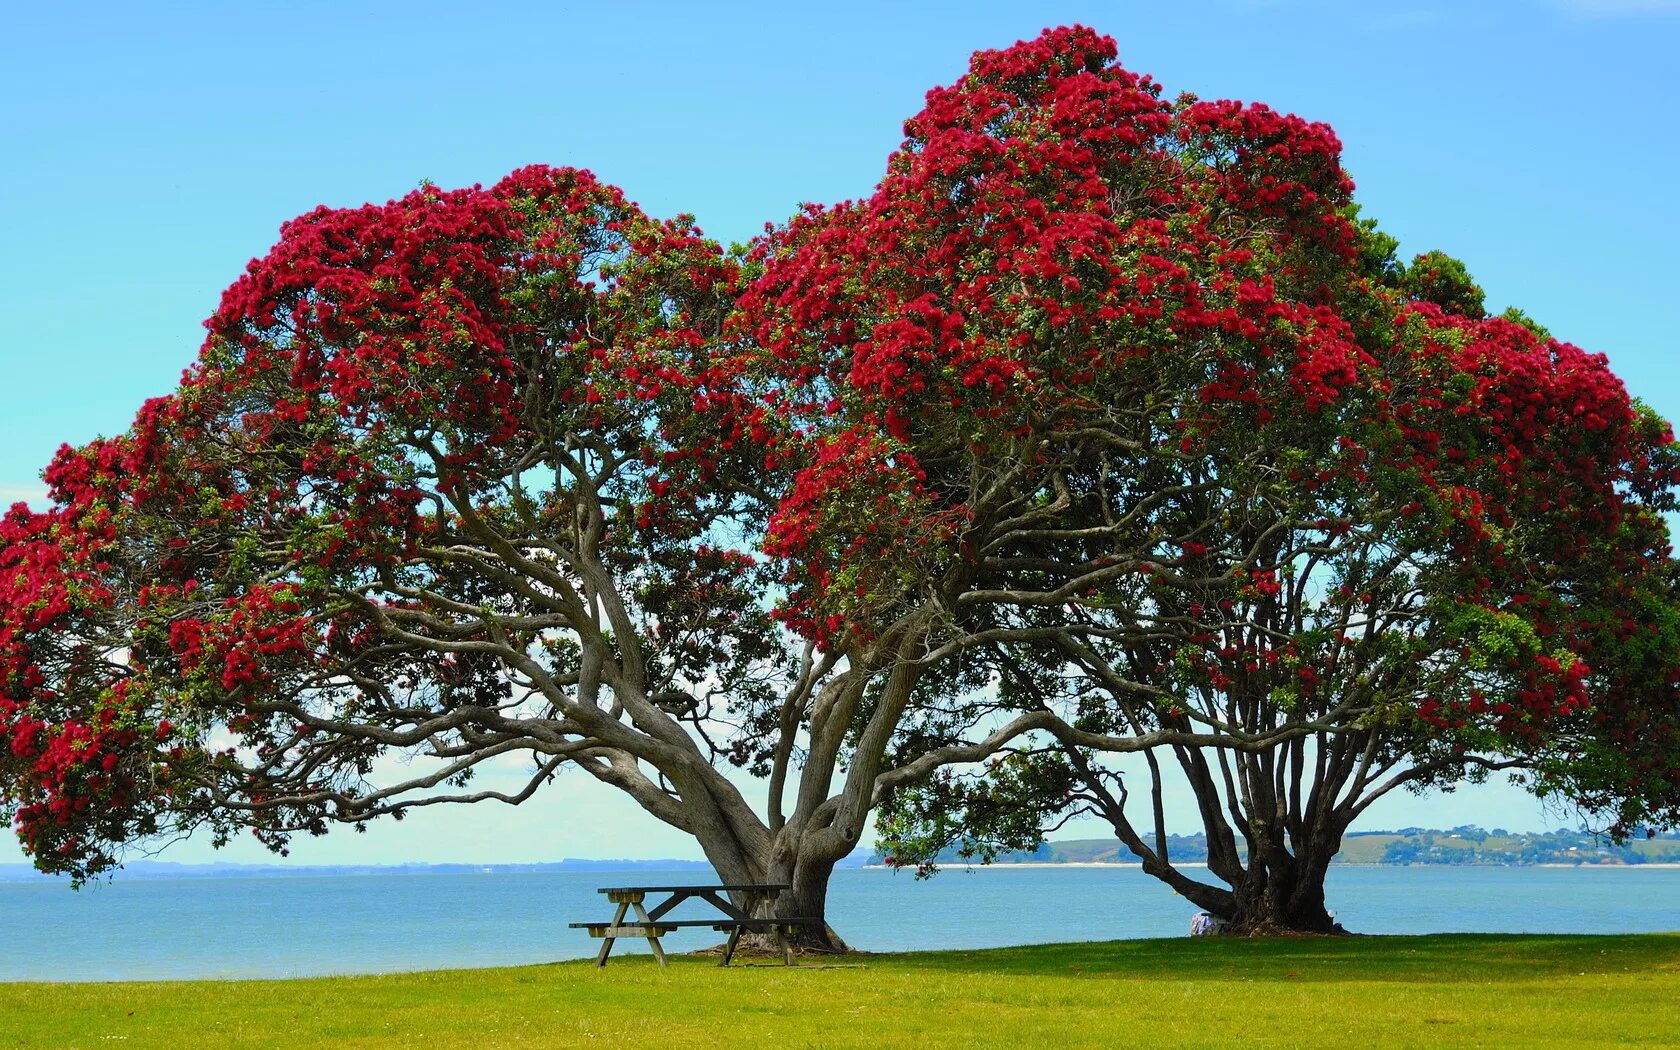 Метросидерос зонтичный. Новая Зеландия цветы Похутукава. Метросидерос холмовой. Дерево в новой Зеландии Похутукава. My new tree